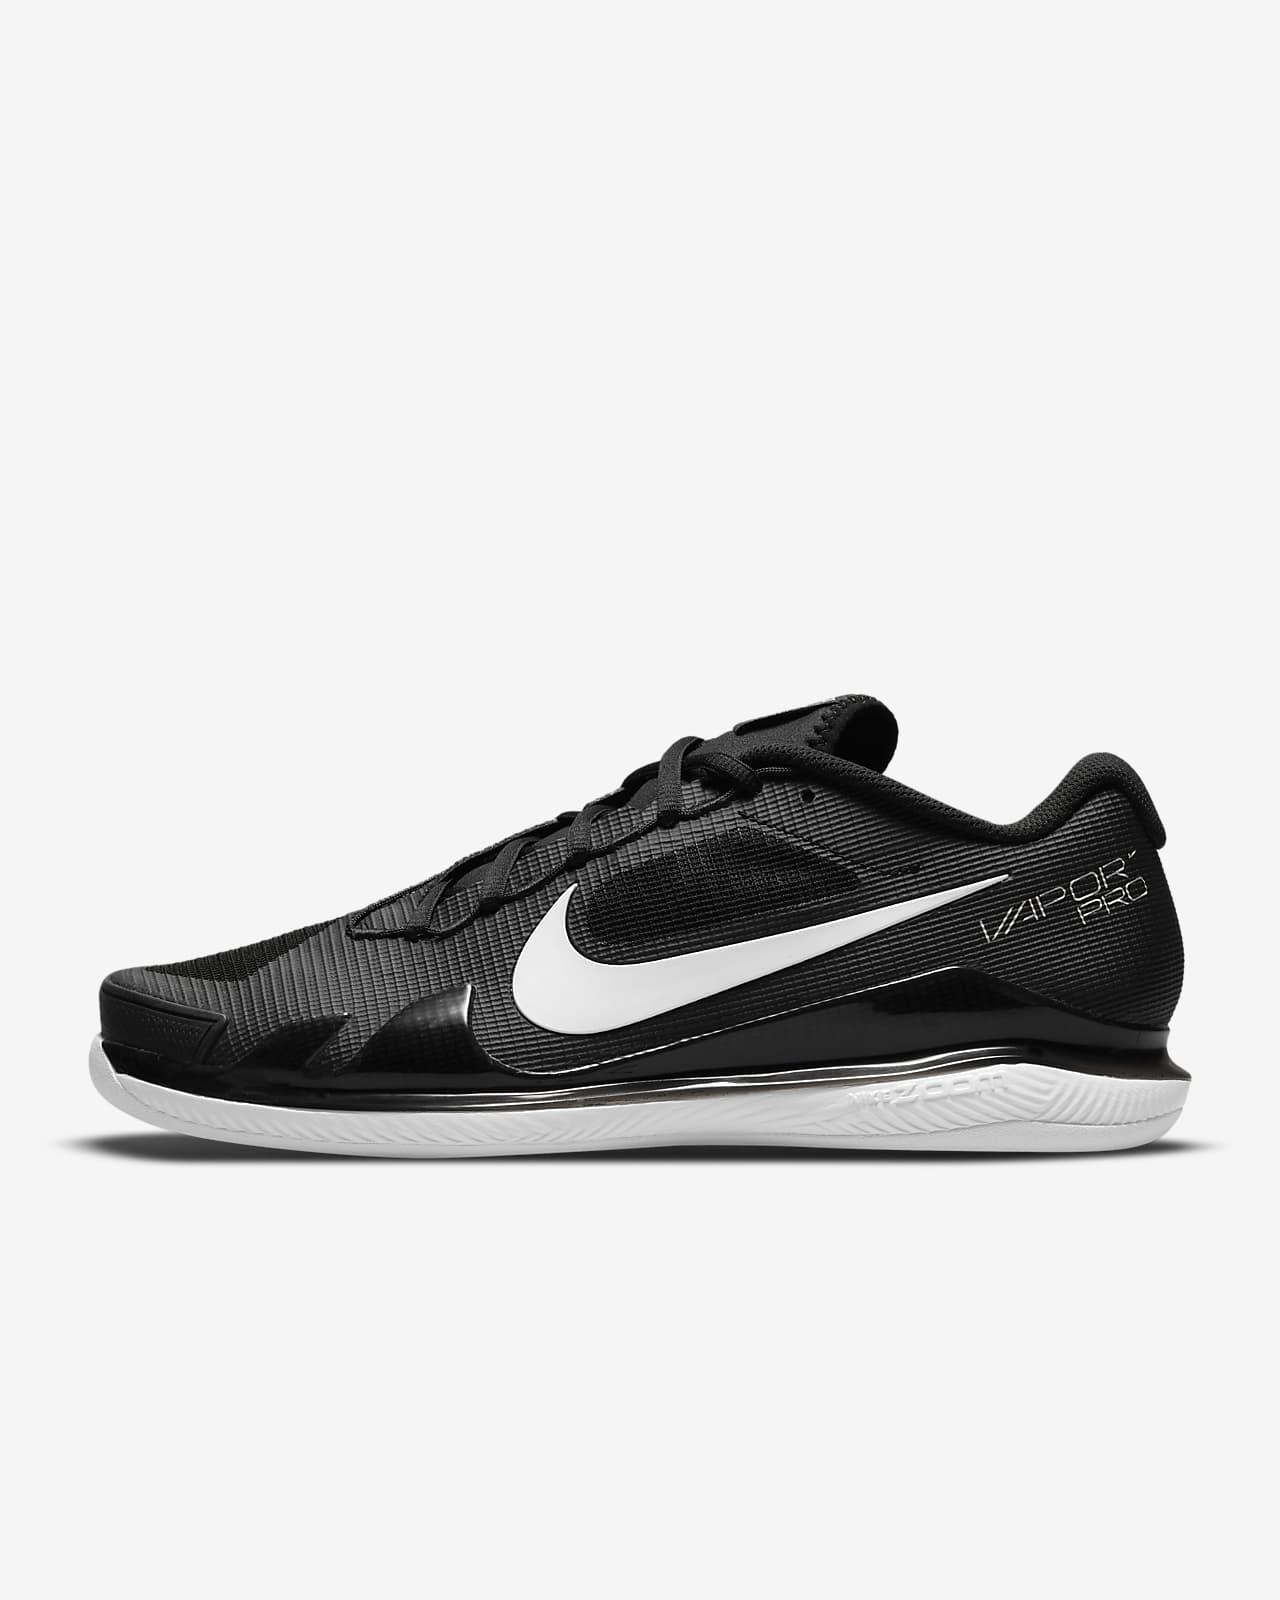 NikeCourt Air Zoom Vapor Pro Men's Carpet Tennis Shoes